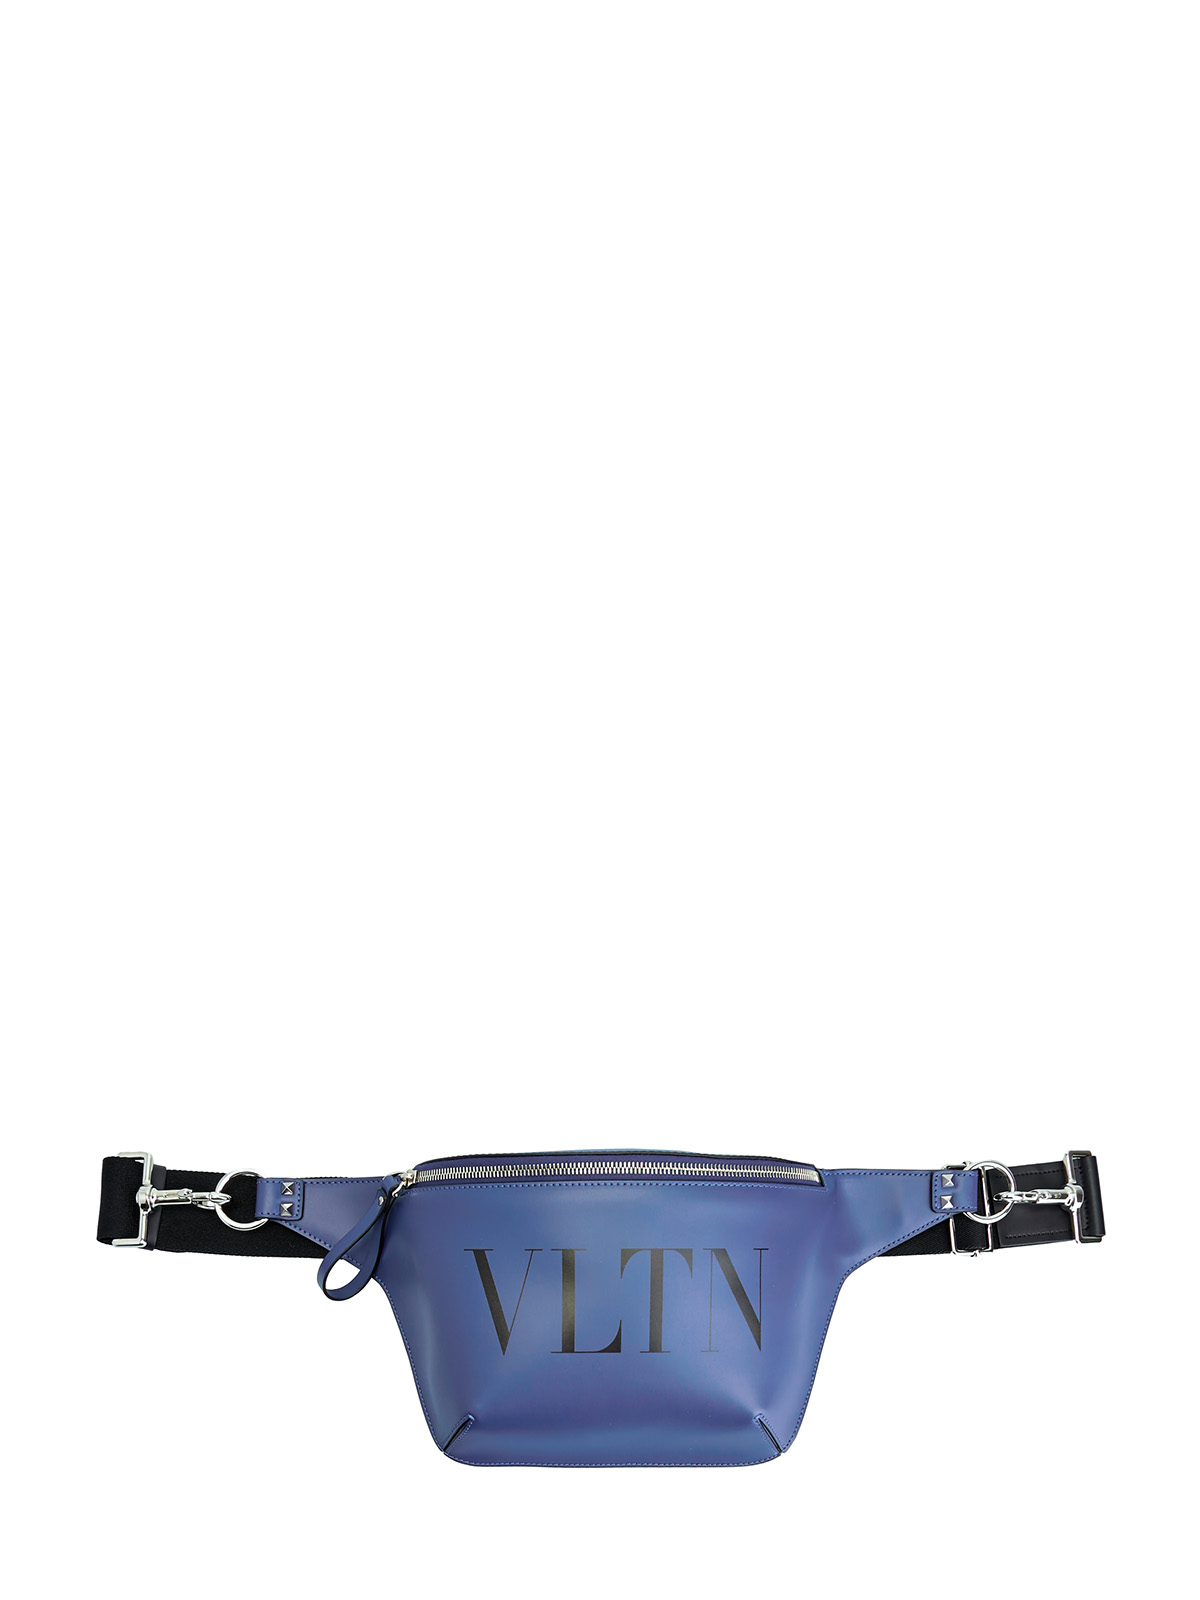 Поясная сумка VLTN из гладкой матовой кожи VALENTINO, цвет синий, размер 36;36.5;37;37.5;38;38.5;39;40;41;39.5 - фото 1